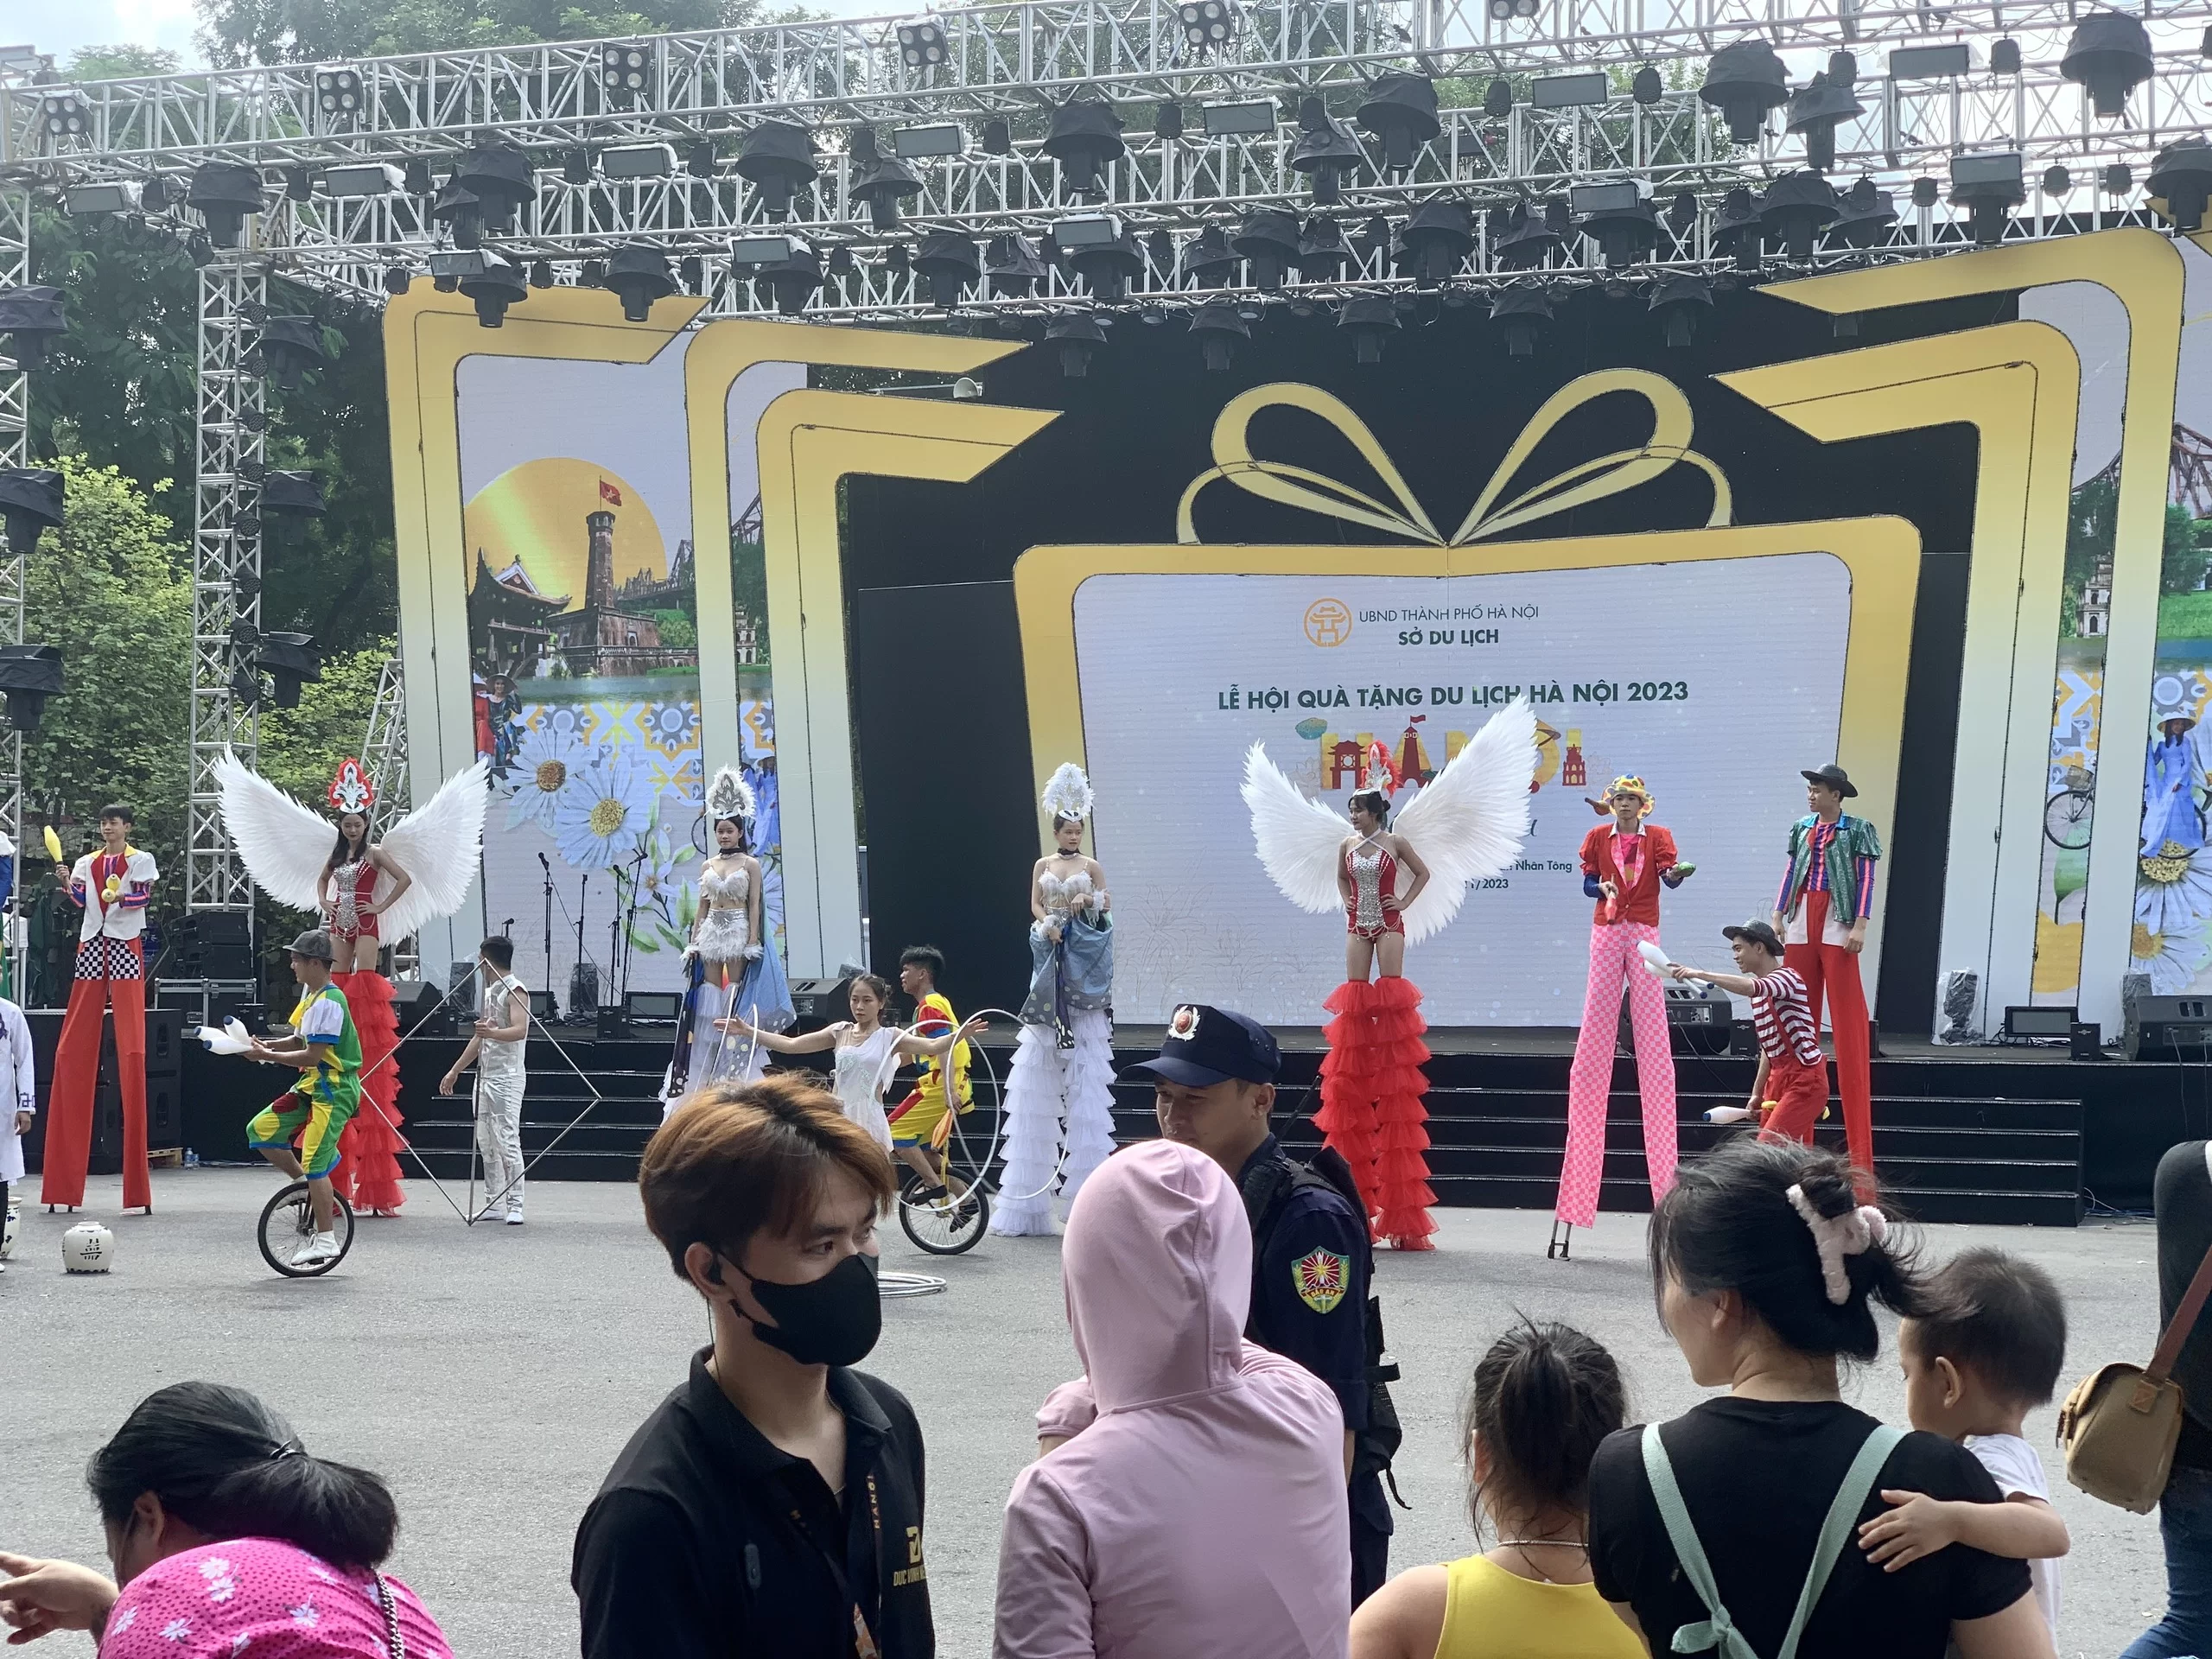 “Hà Nội - Đến để yêu” - Điểm hẹn văn hoá, ẩm thực cuối tuần tại Lễ hội Quà tặng du lịch Hà Nội 2023